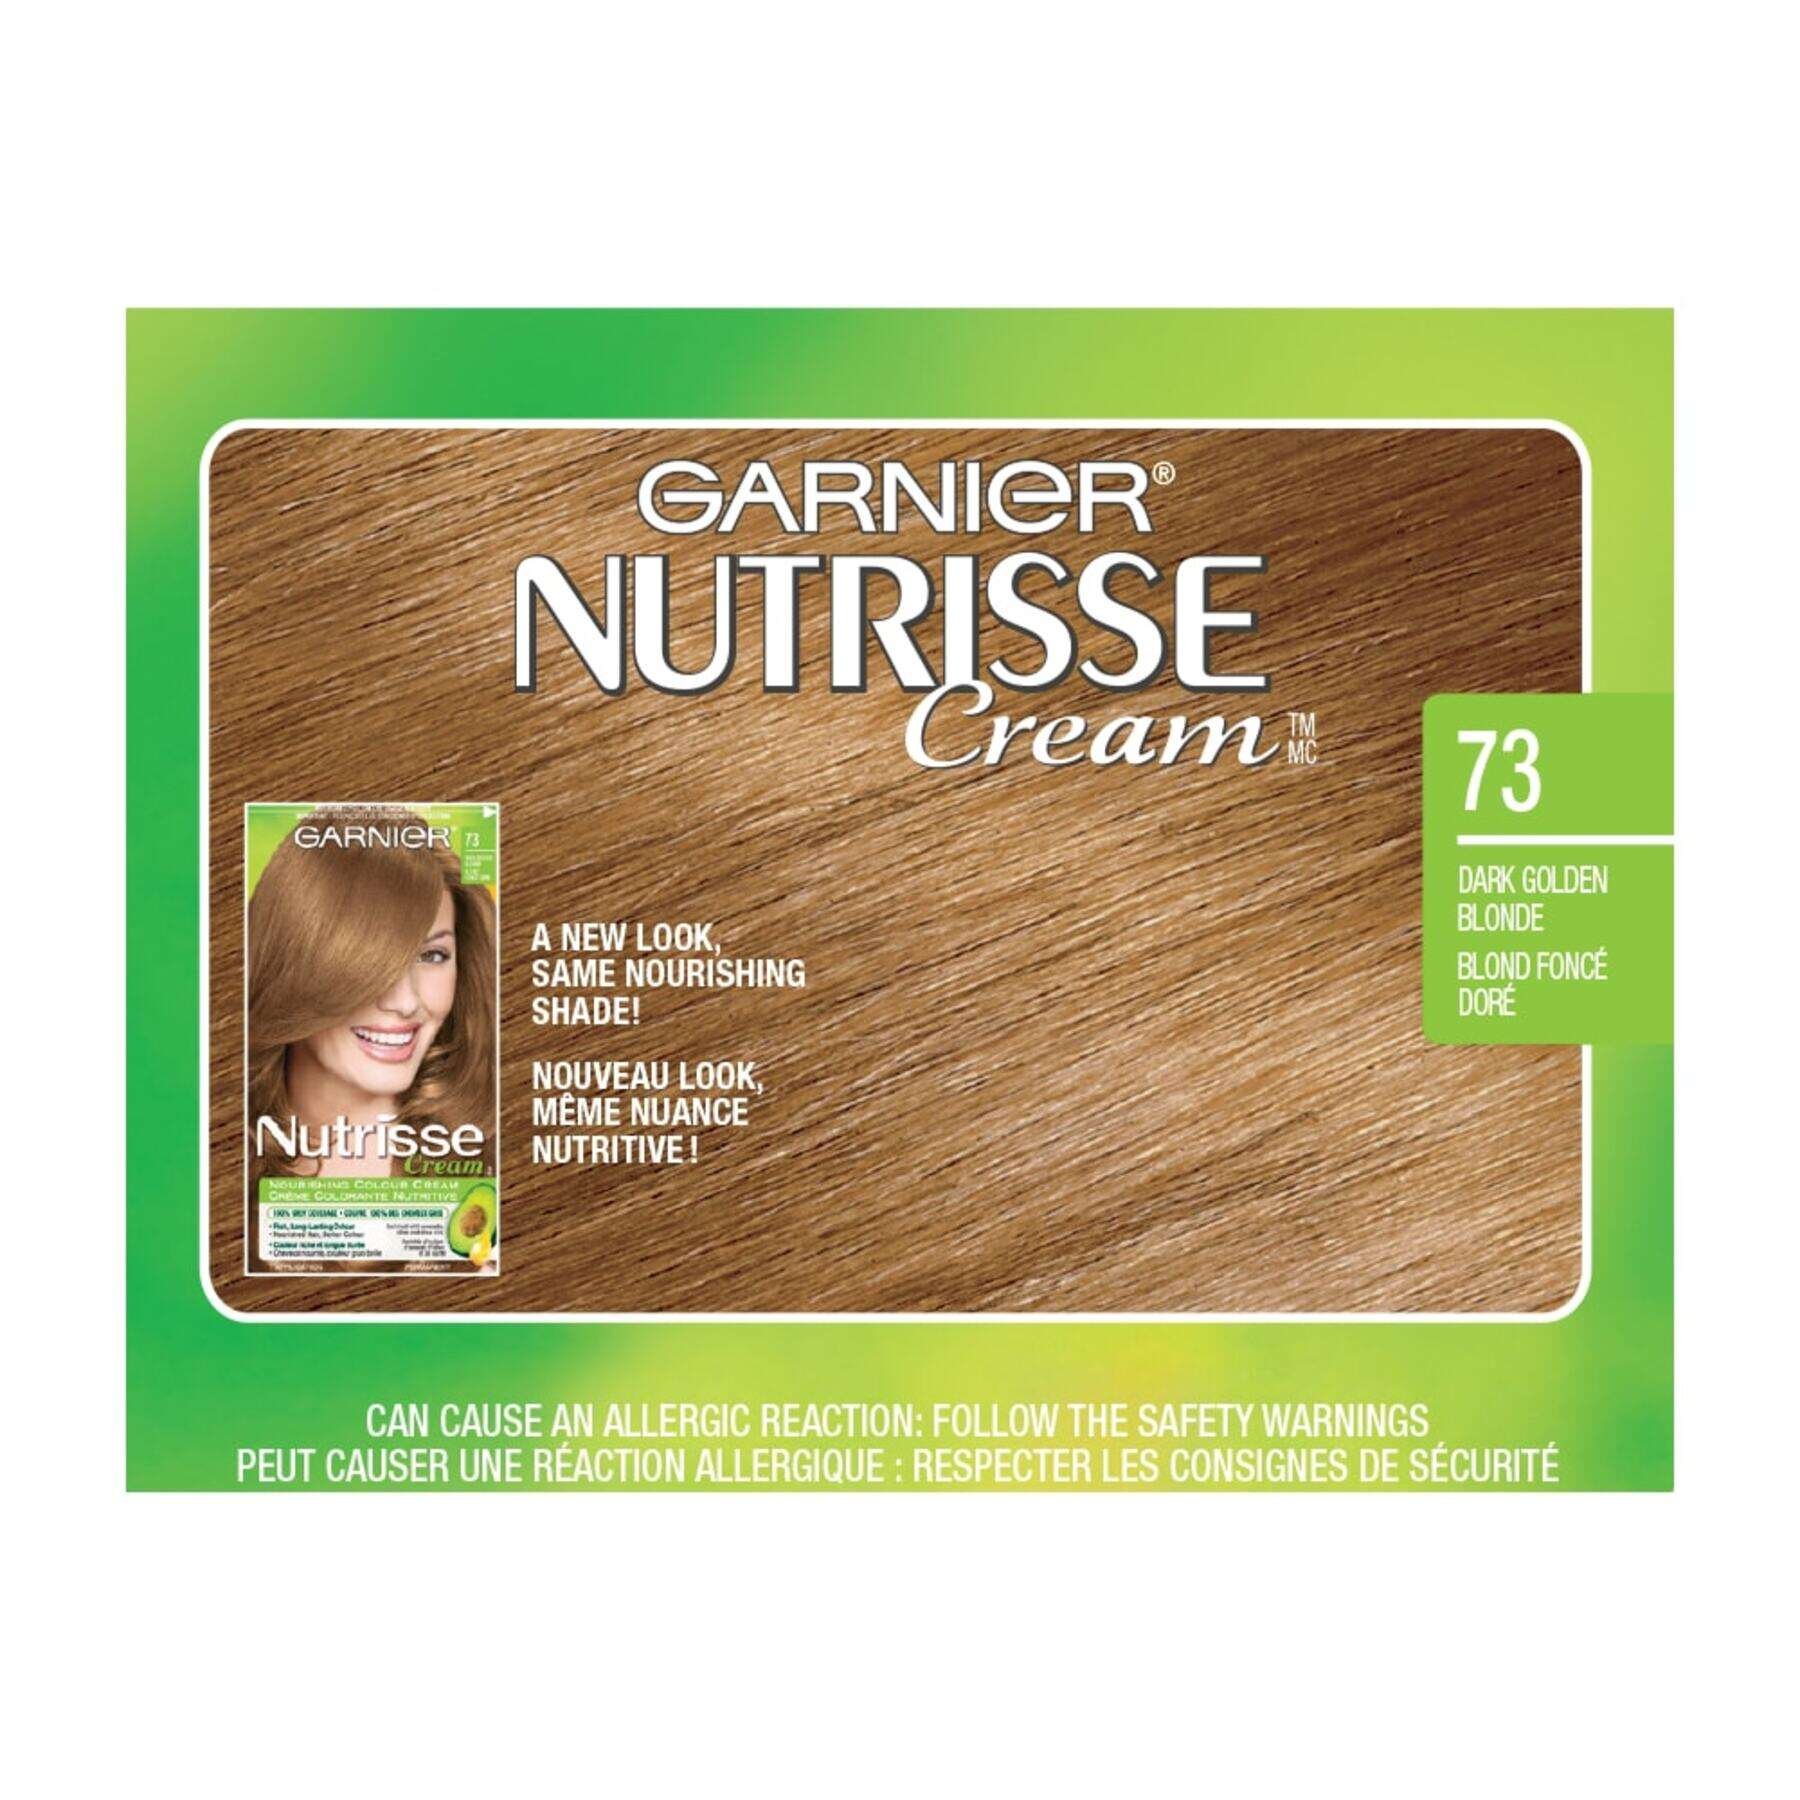 garnier hair dye nutrisse cream 73 dark golden blonde 0770103447216 swatch